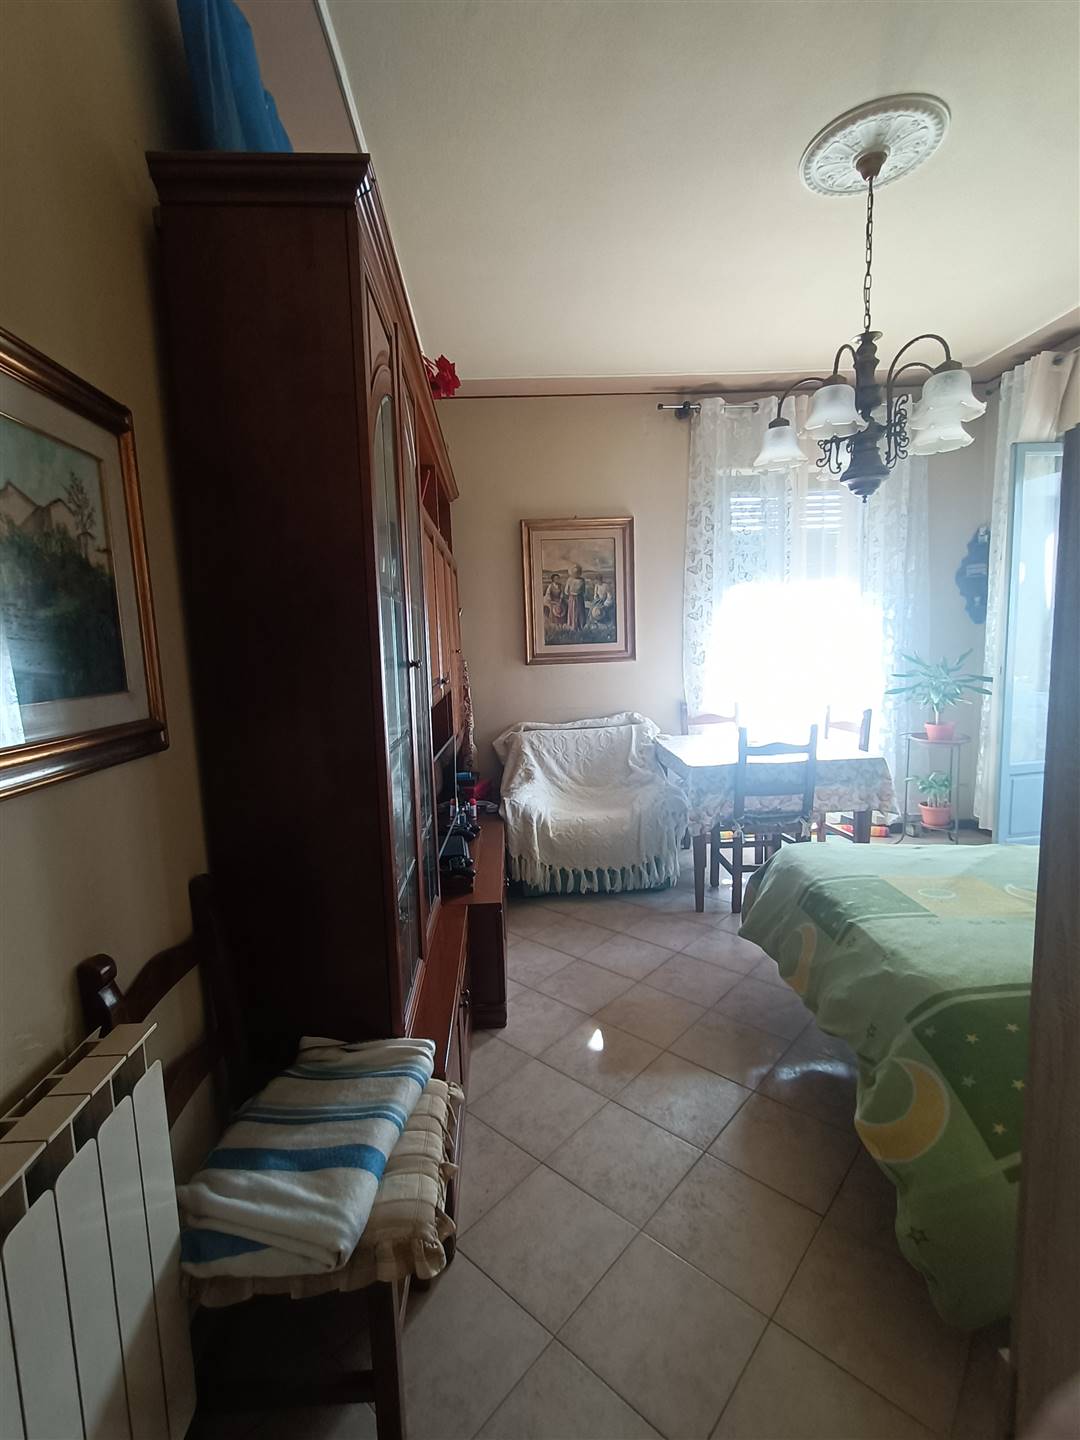 Appartamento in vendita a Castelfranco Piandiscò, 4 locali, zona Località: FAELLA, prezzo € 115.000 | CambioCasa.it